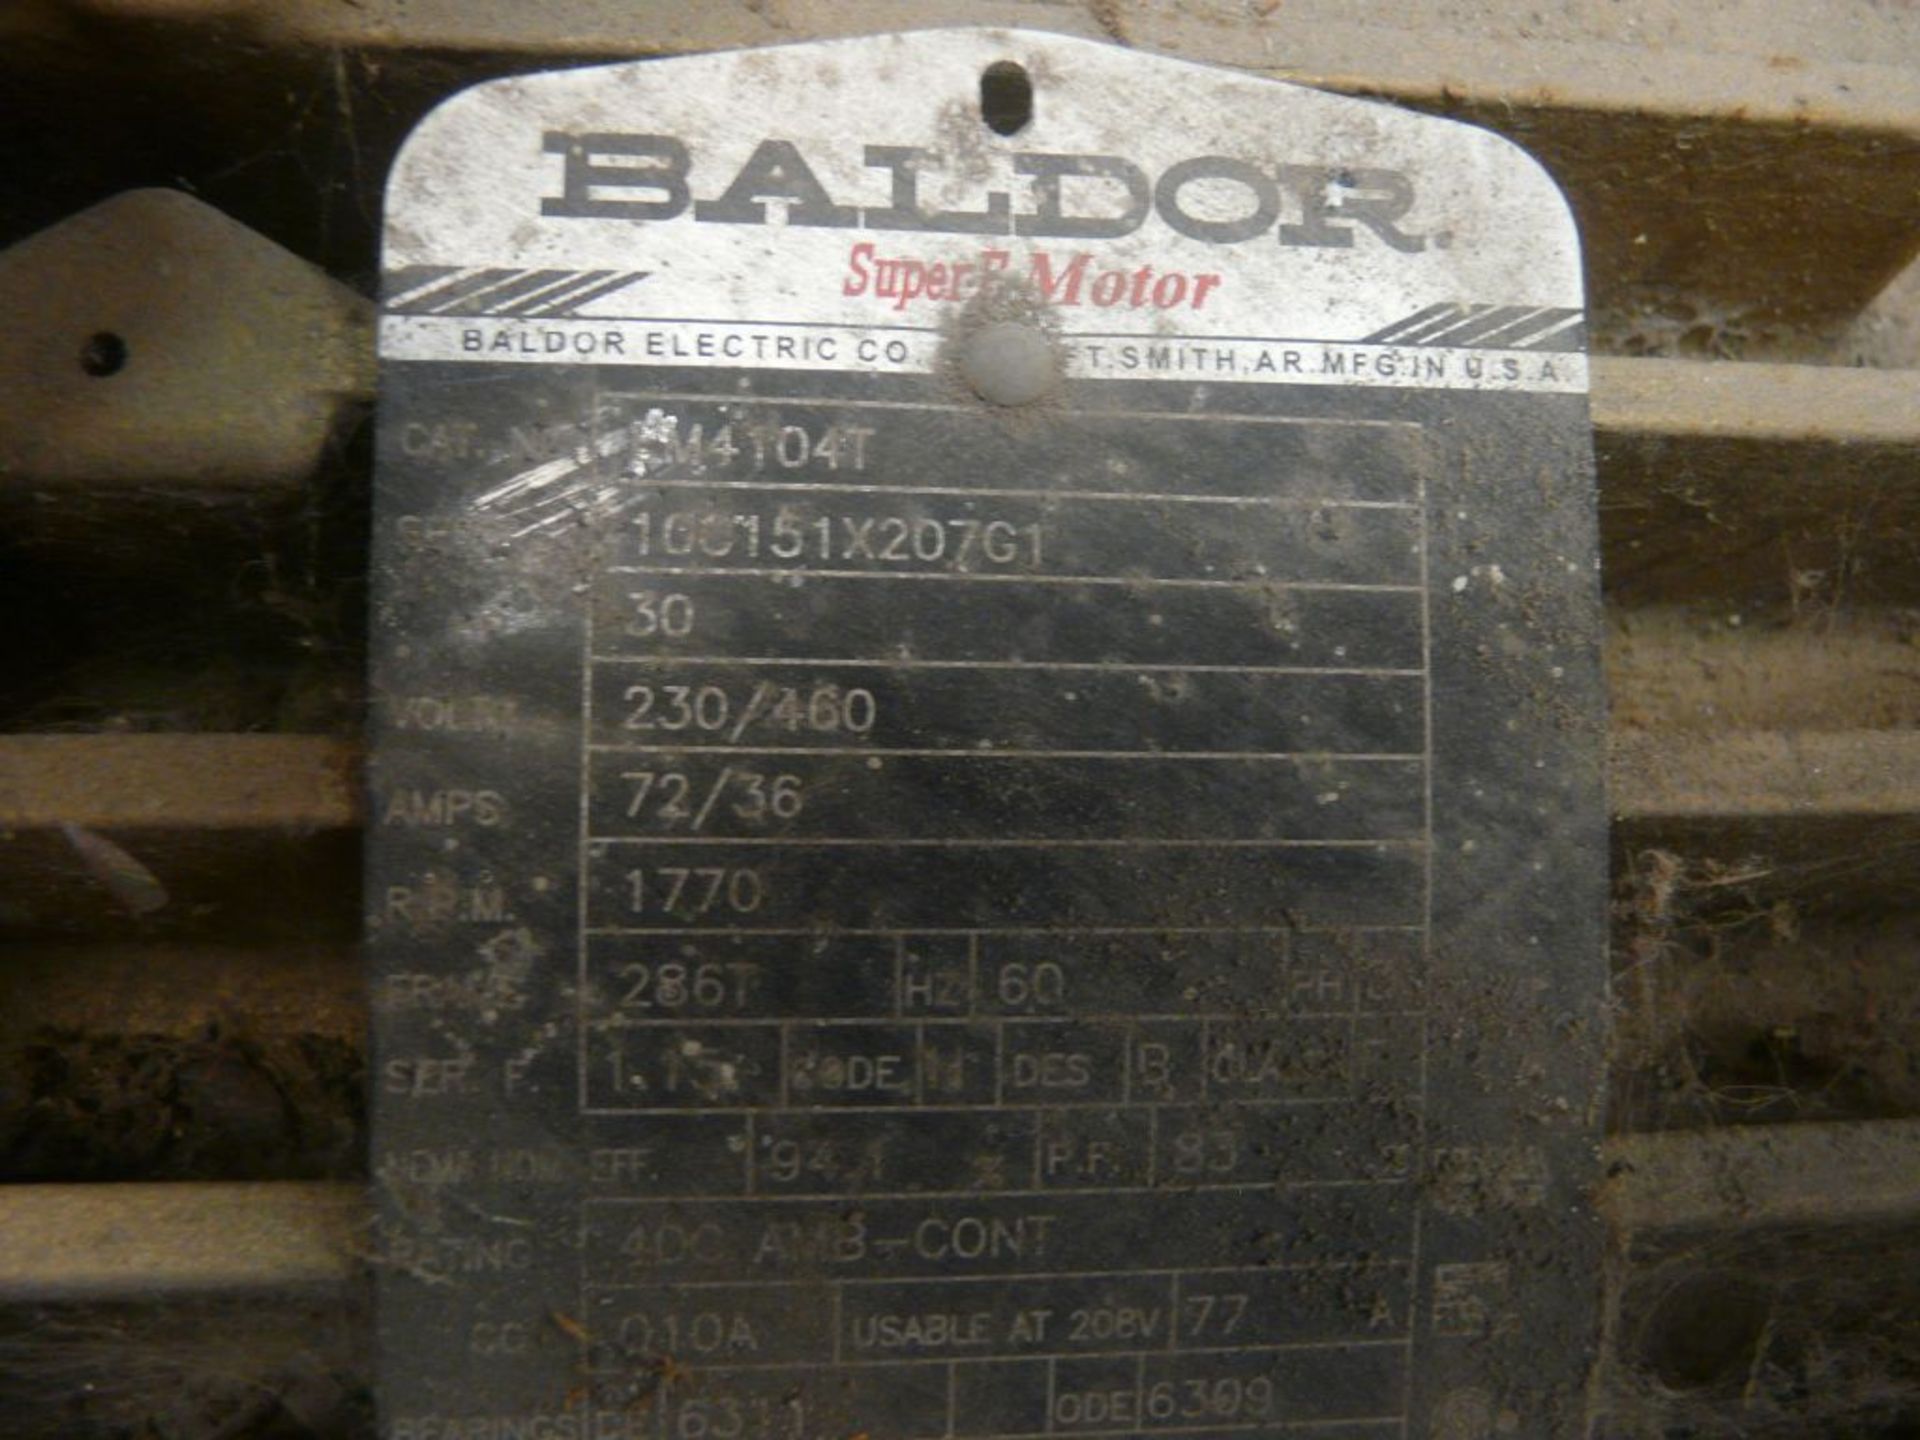 Baldor 30 HP Super-E Motor - Cat No. EM4104T; 30 HP; 460V; 1770 RPM; 3PH; Frame: 286T - Image 7 of 7